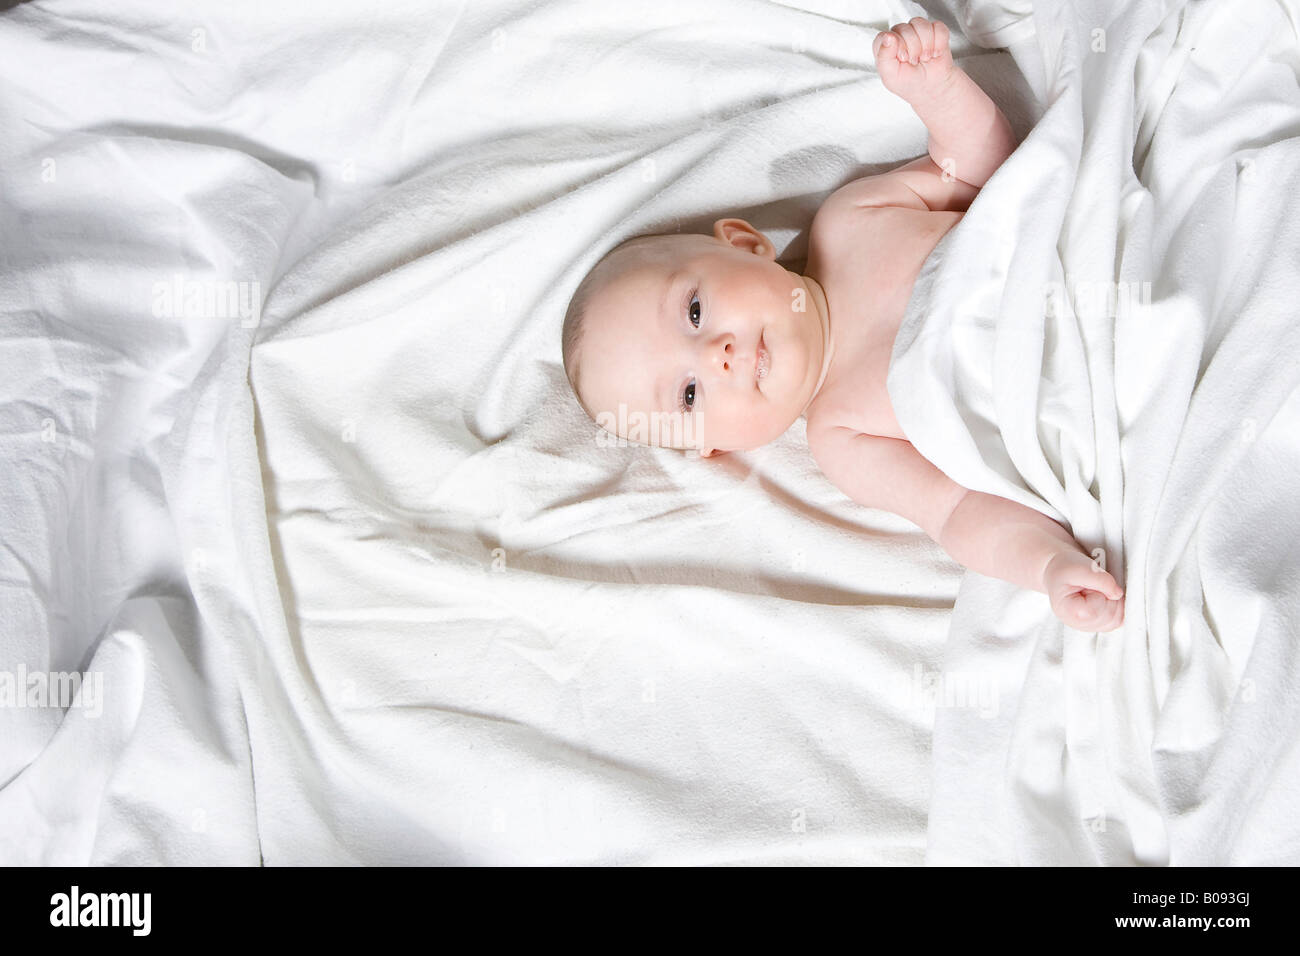 Quattro-mese-vecchio bambino avvolto in una coperta Foto Stock